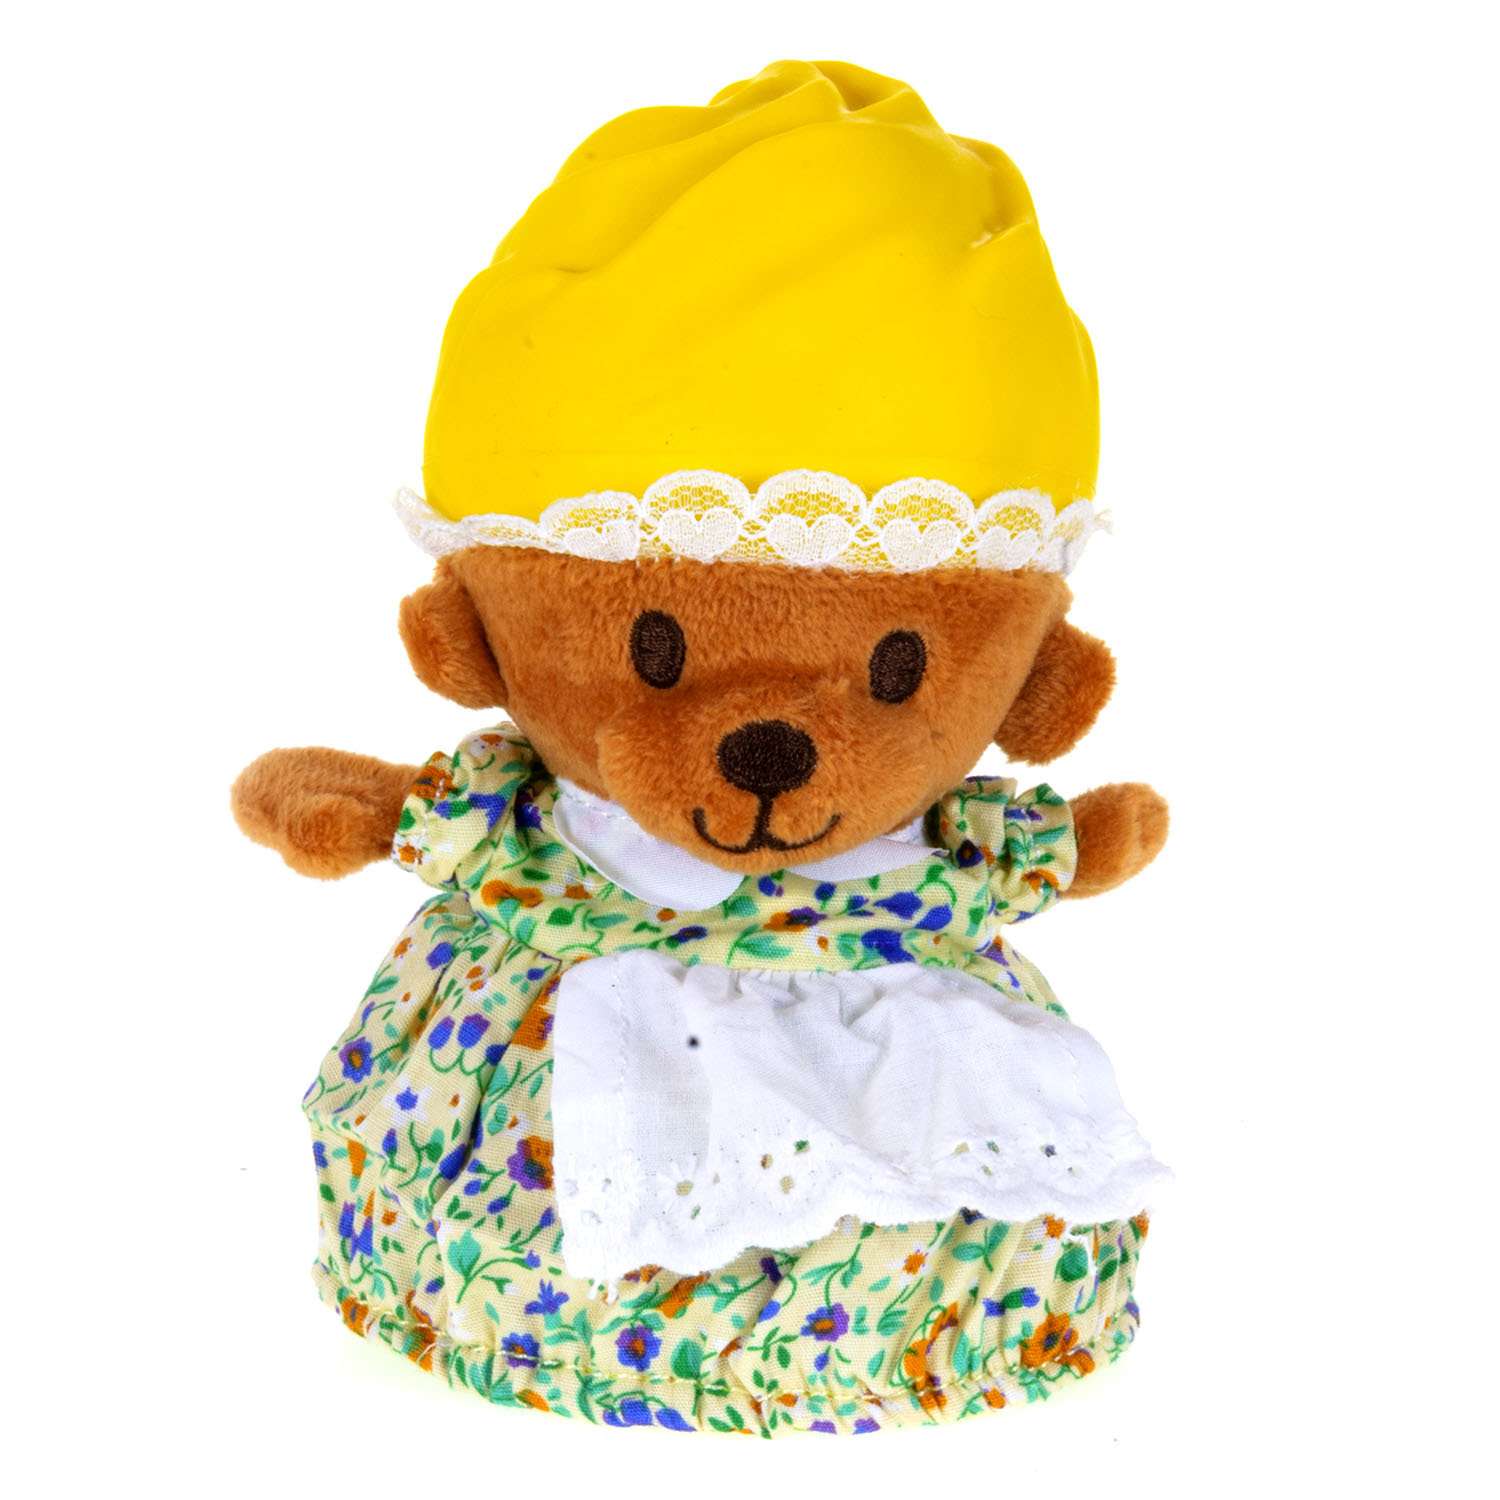 Игрушка Cupсake Bears Медвежонок в капкейке Лимонка Салатовый кекс - фото 1